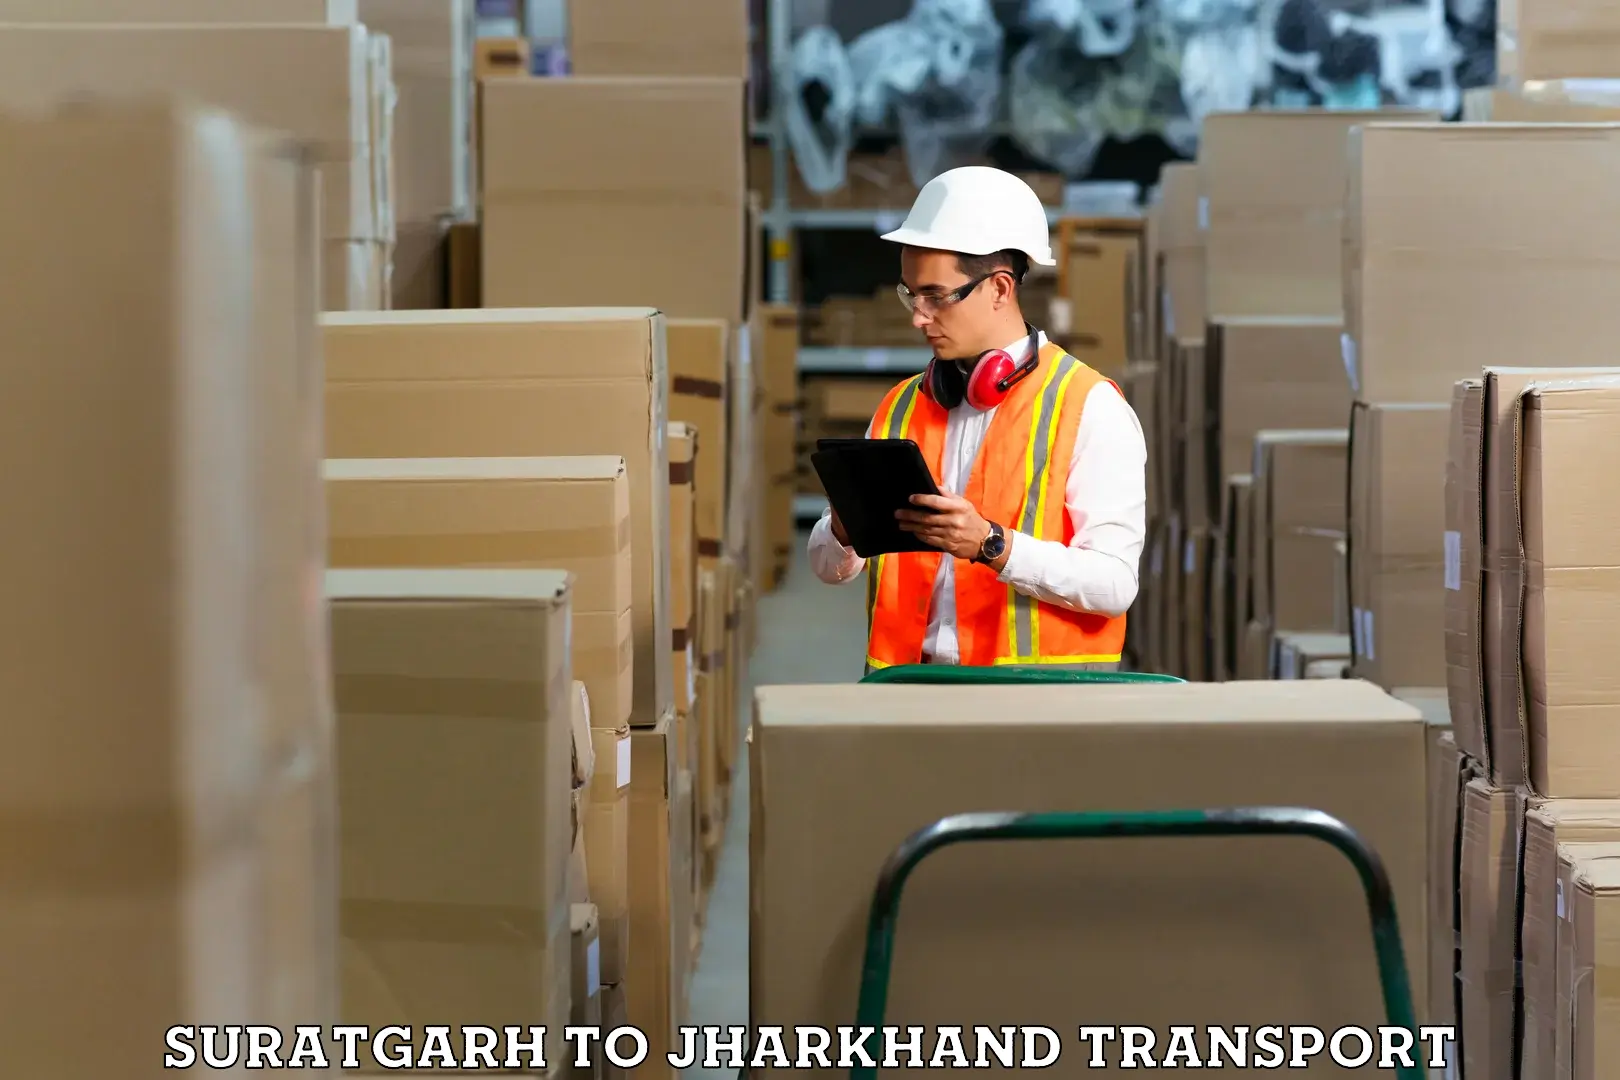 Furniture transport service Suratgarh to Ormanjhi